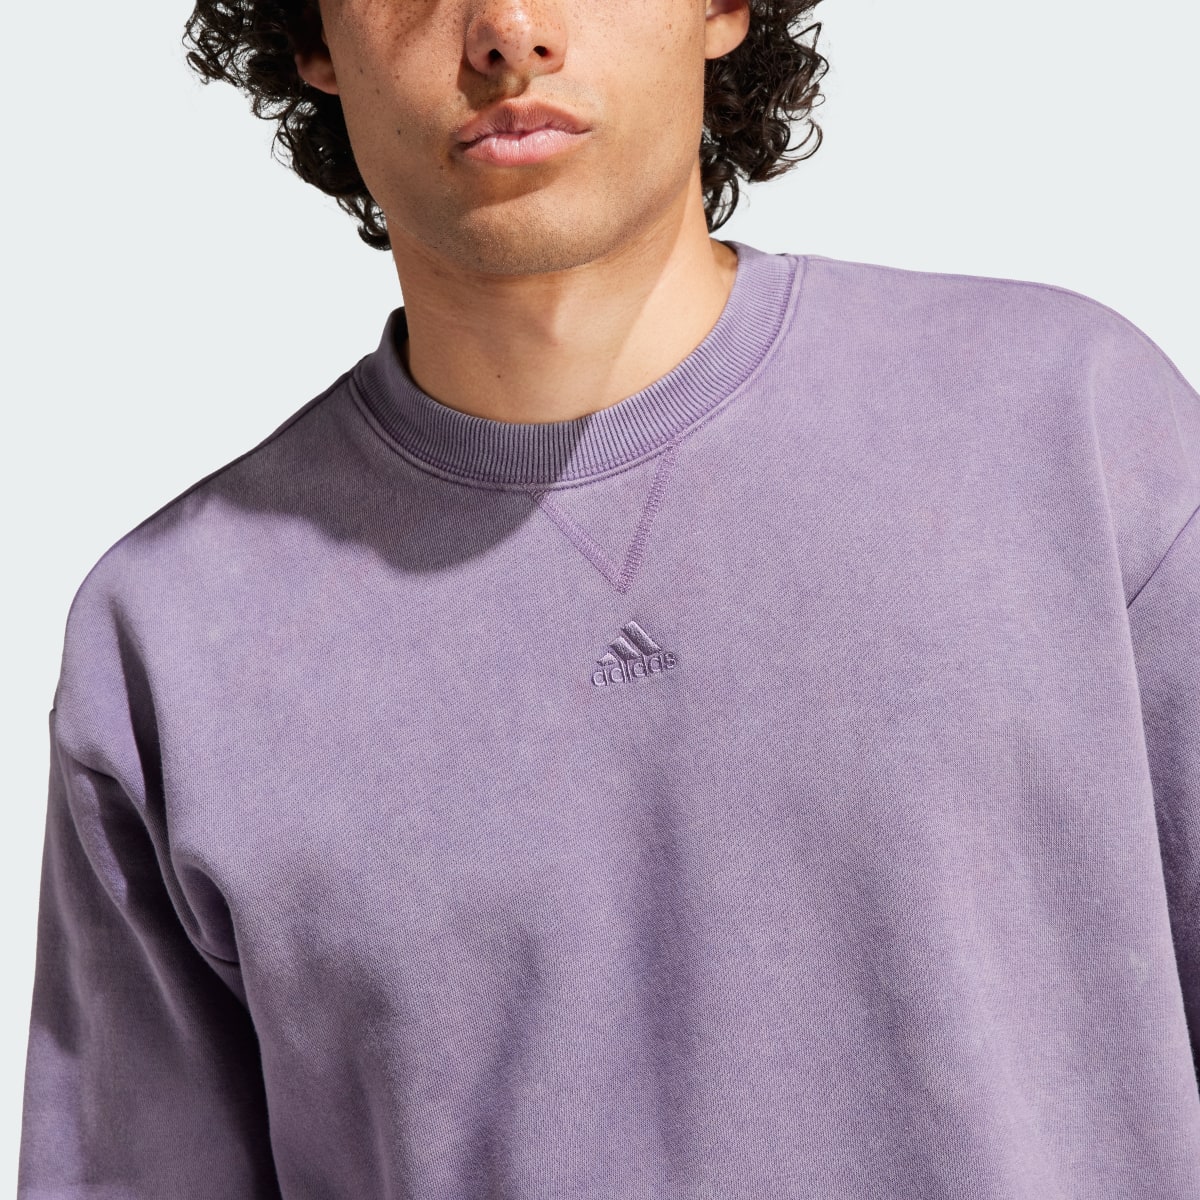 Adidas ALL SZN Long Sleeve Sweatshirt. 6